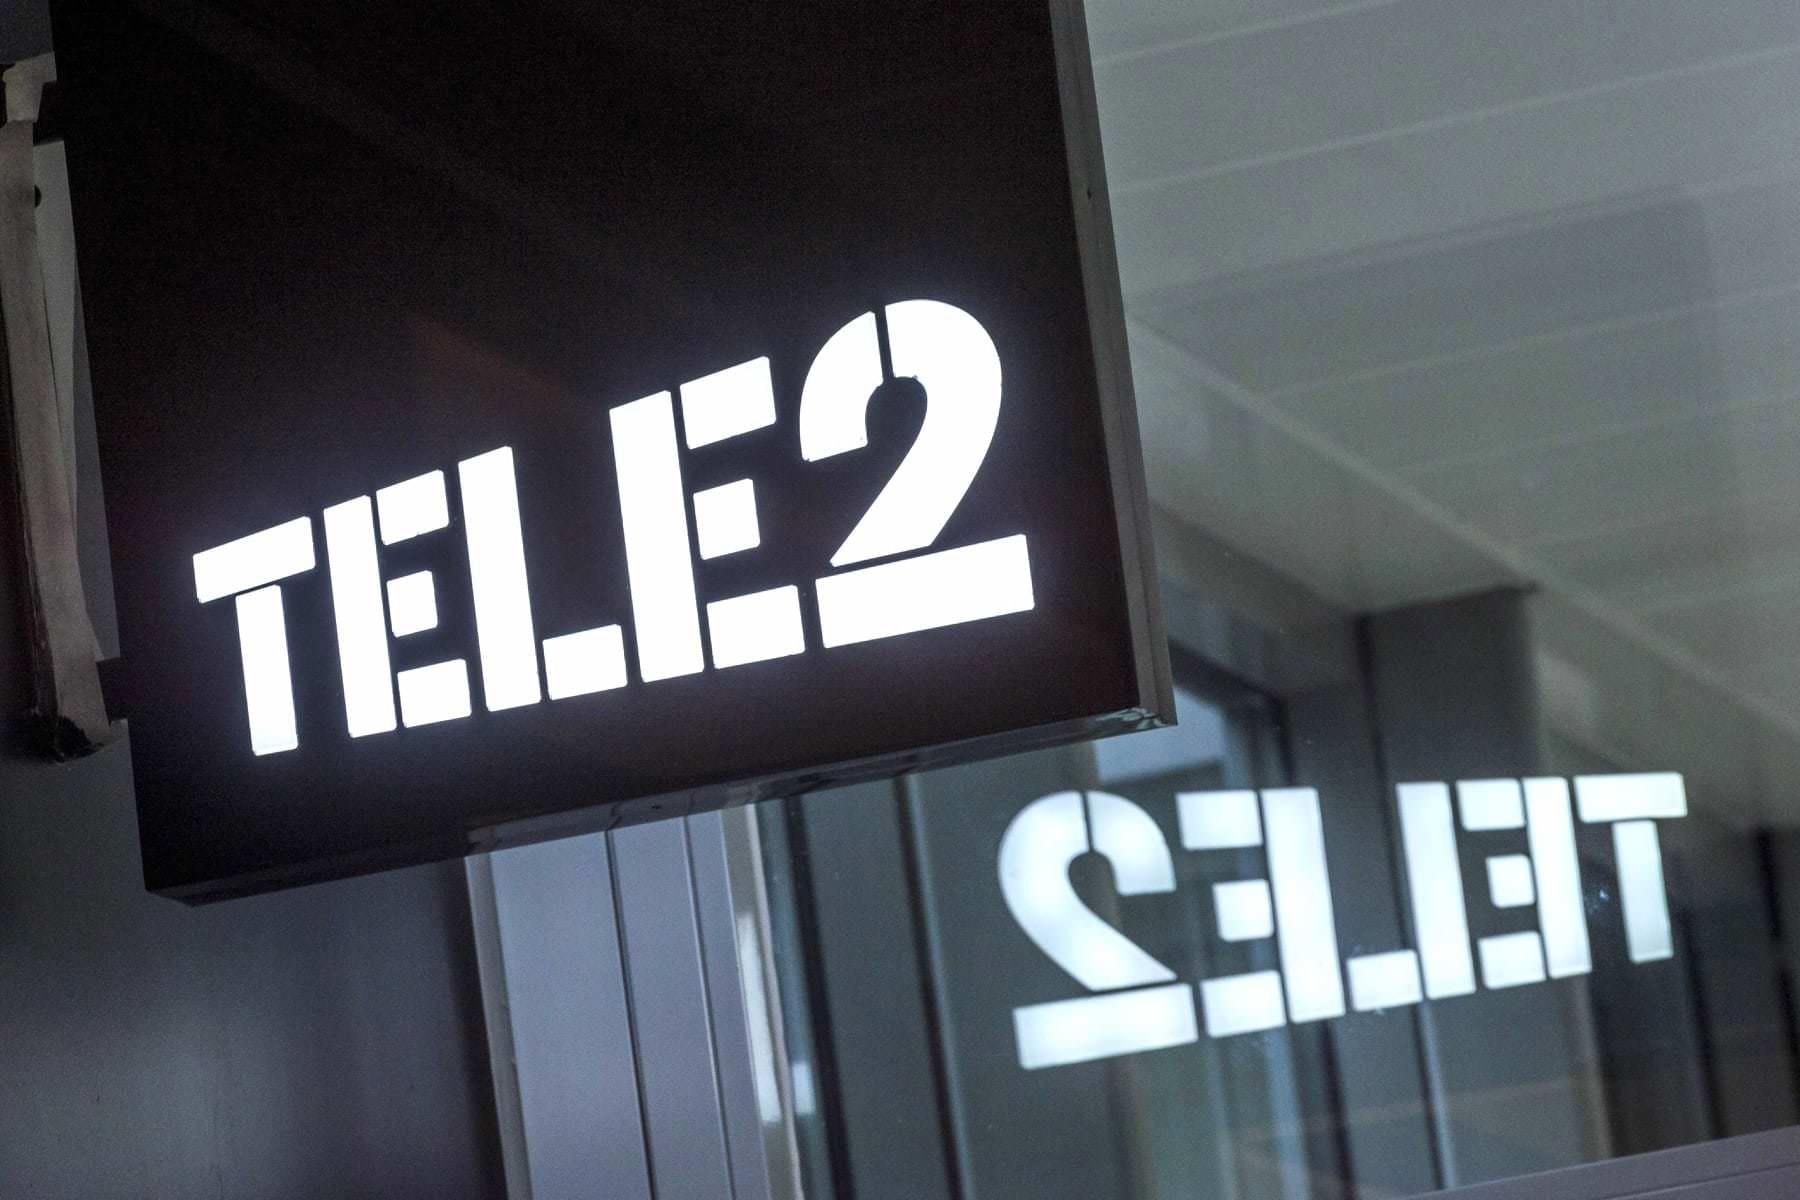   tele2    